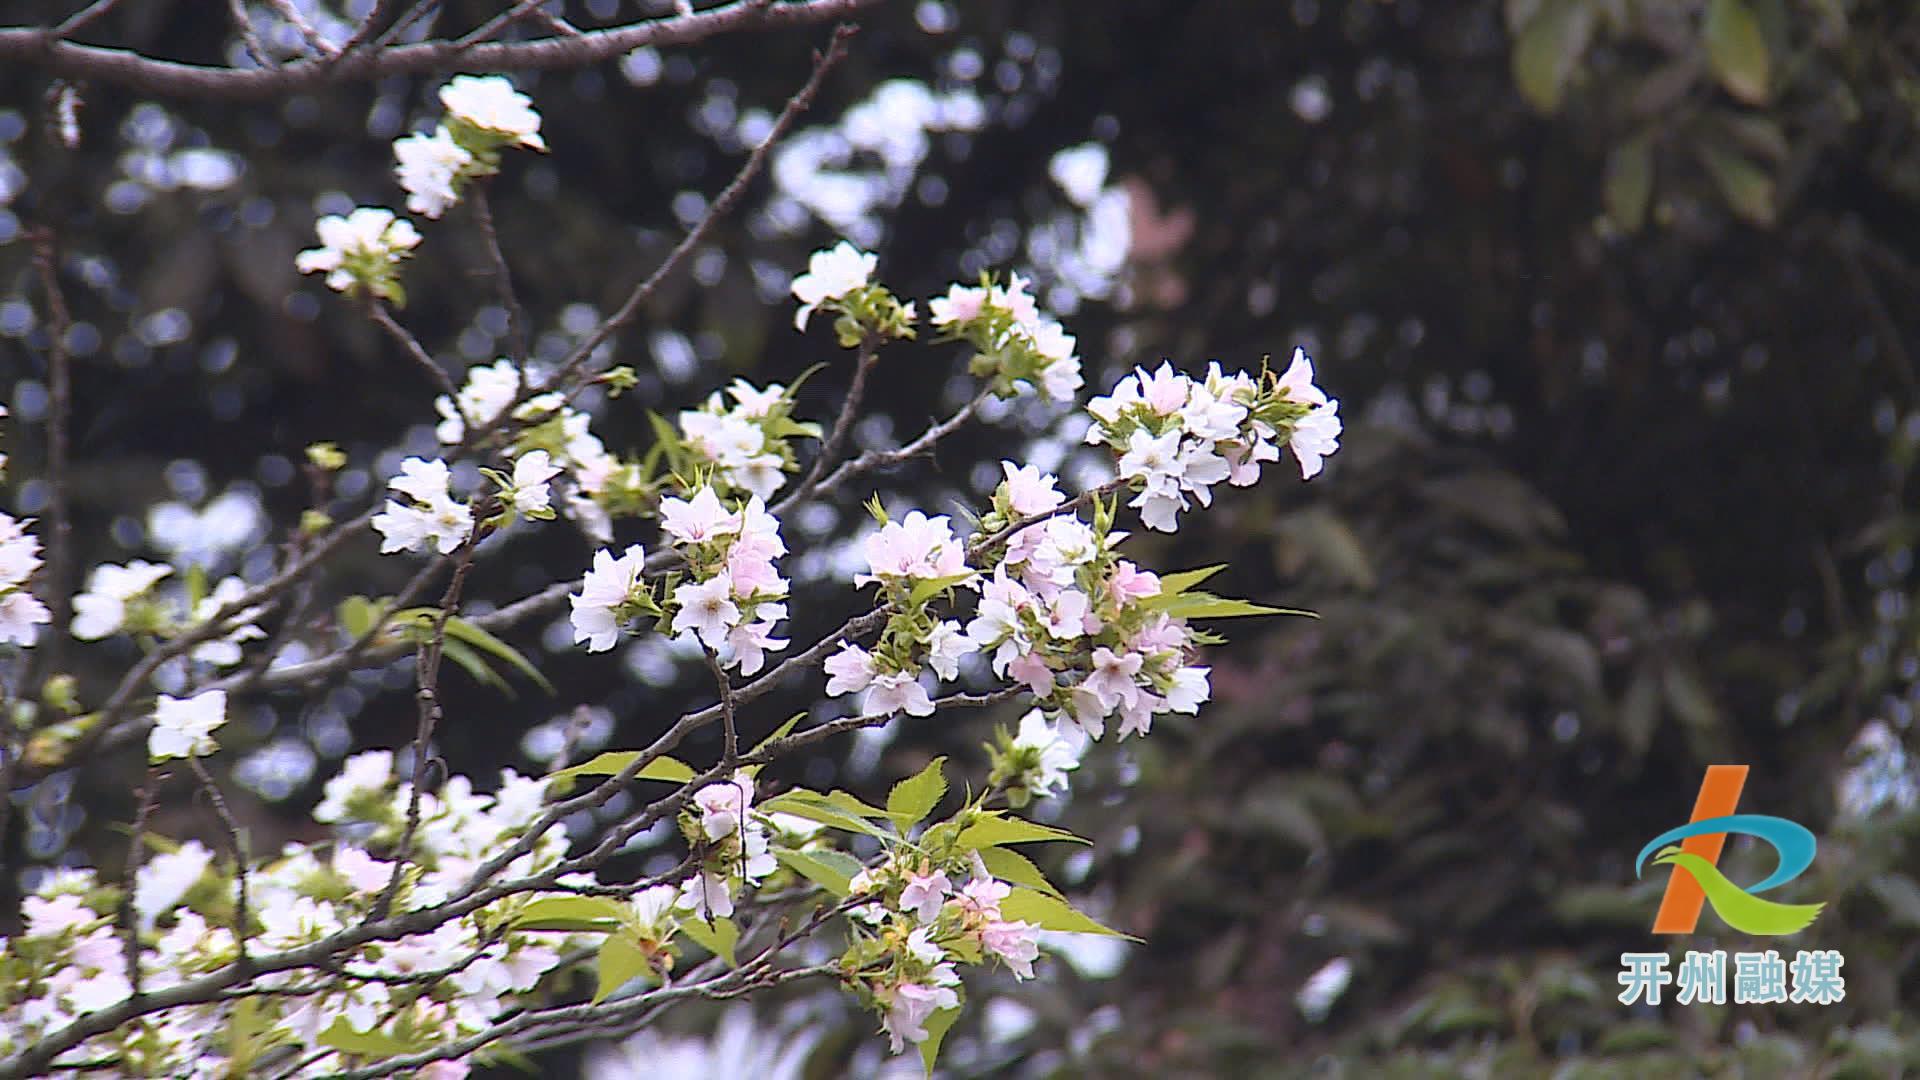 滨湖公园的多种花卉错季开放 形成了现在是春天的假象！‘NG官网APP下载’(图5)